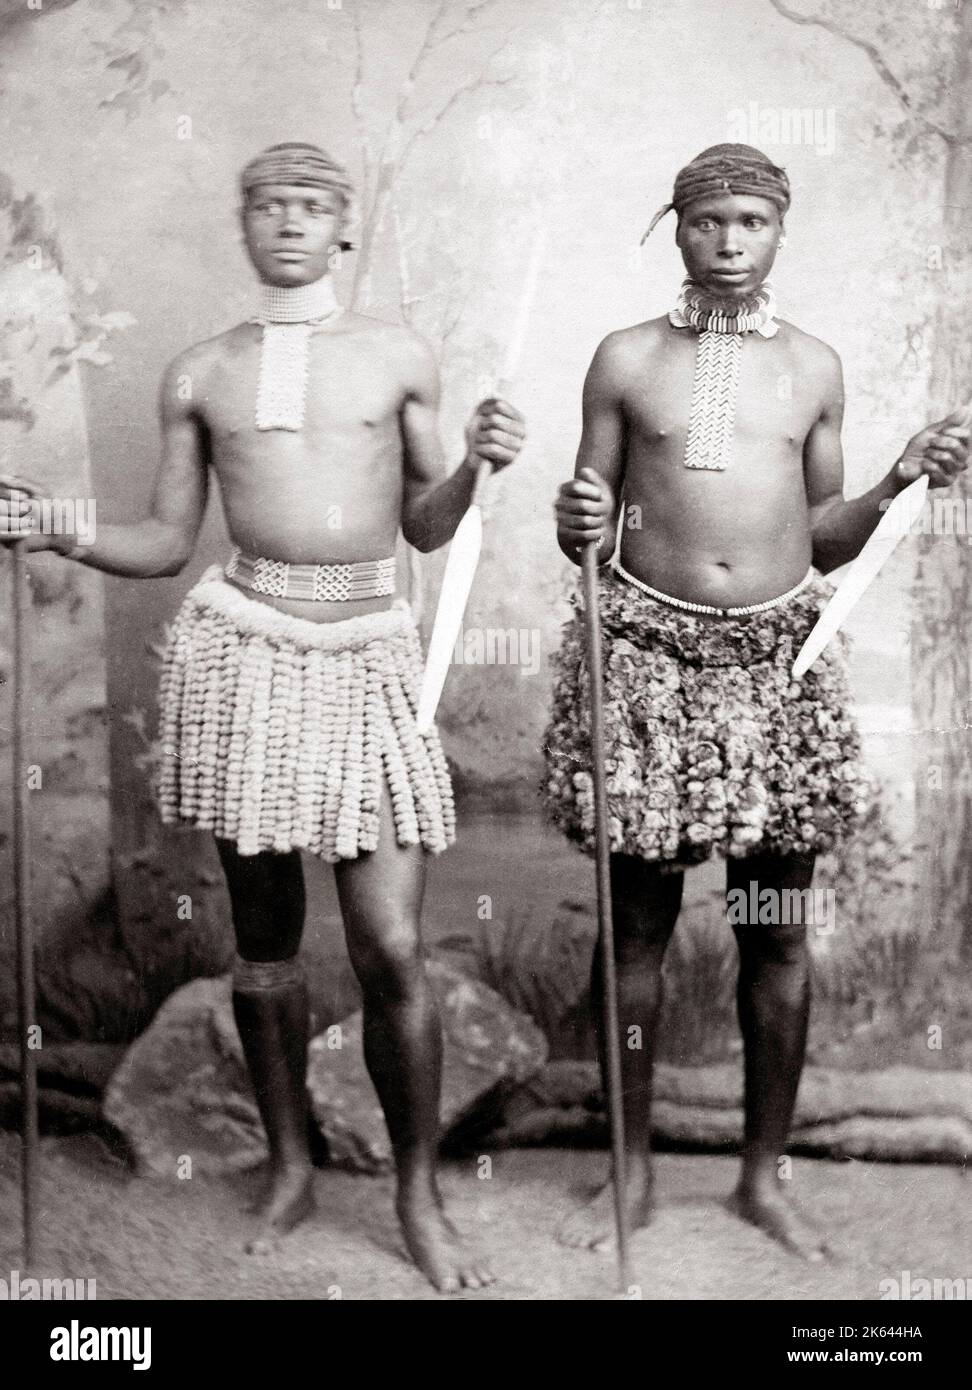 Les guerriers zoulous avec armes, Afrique du Sud, c.1890 Banque D'Images